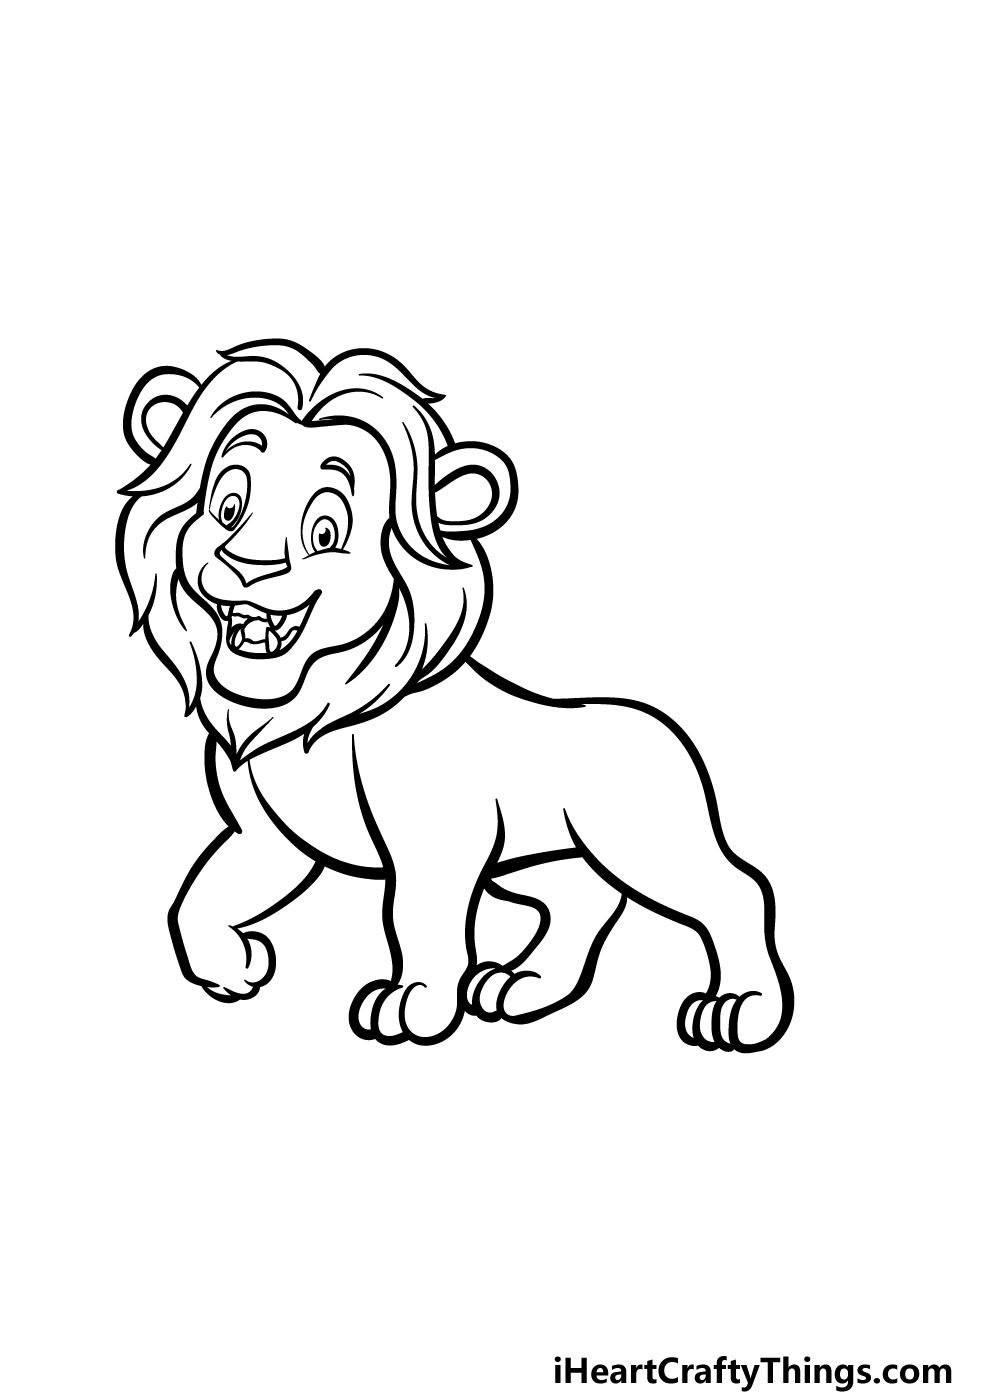 how to draw a cartoon lion step 4